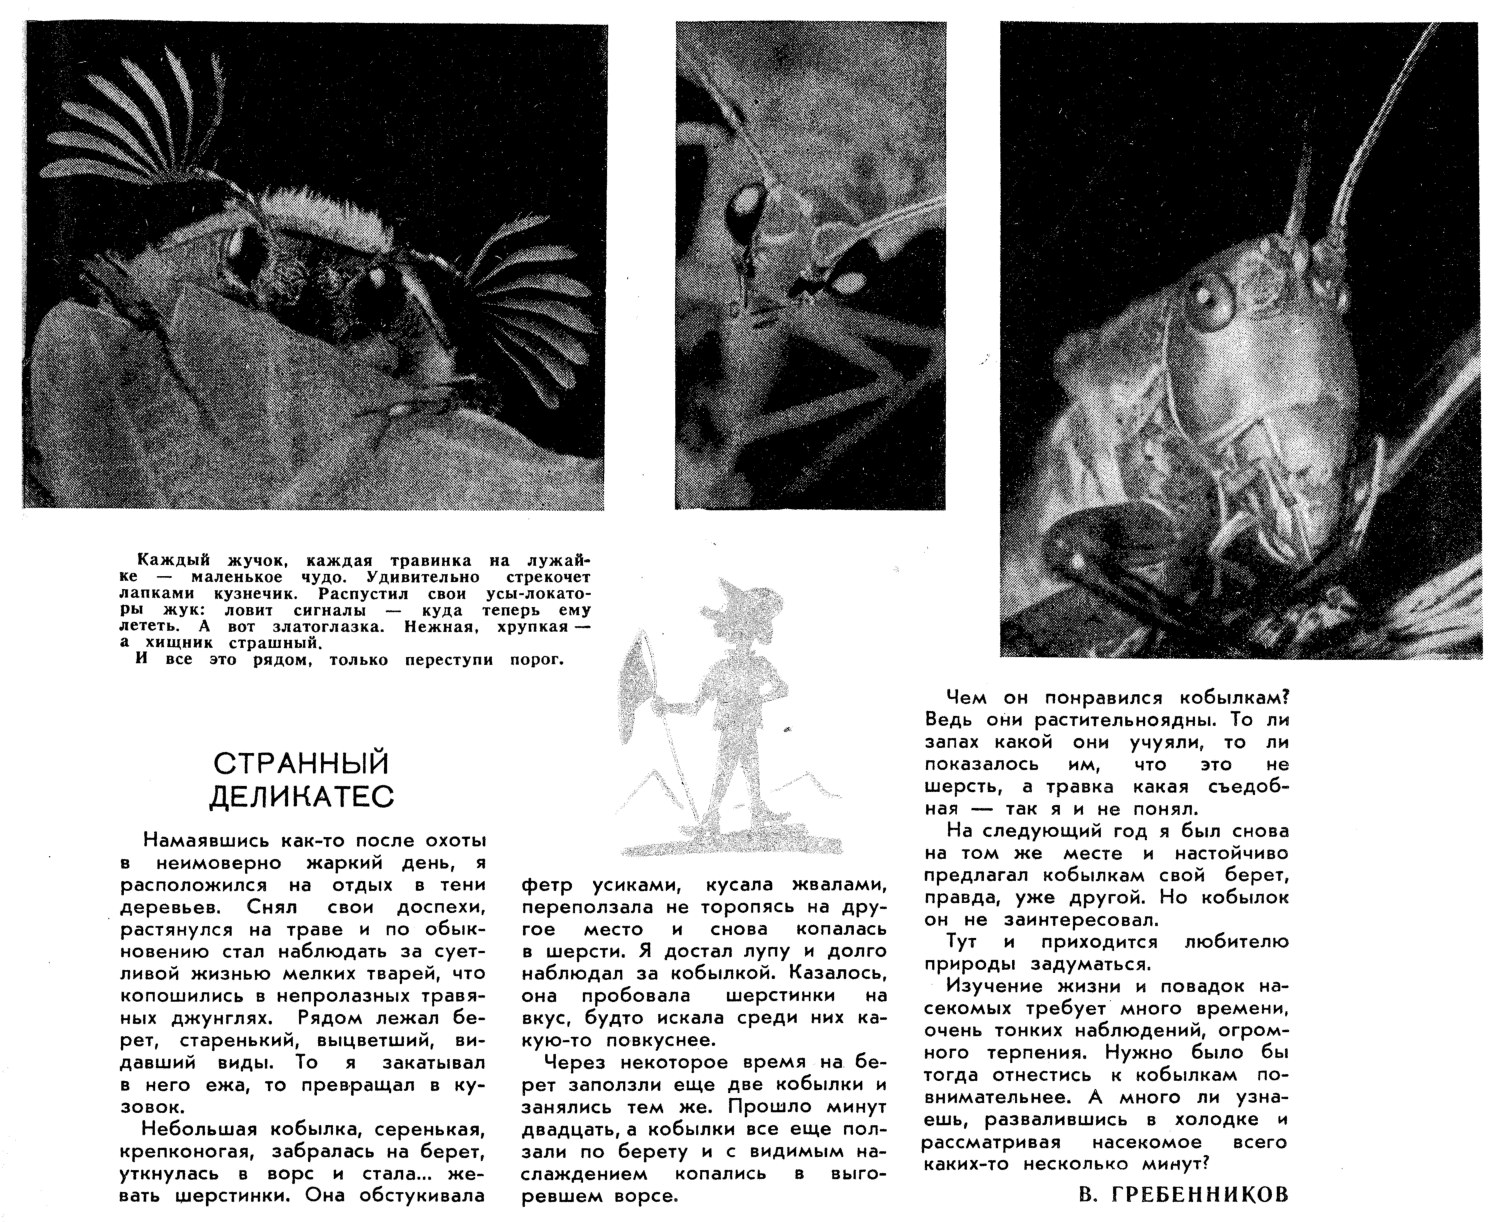 Странный деликатес. В.С. Гребенников. Юный натуралист, 1966, №5, с.23. Фотокопия